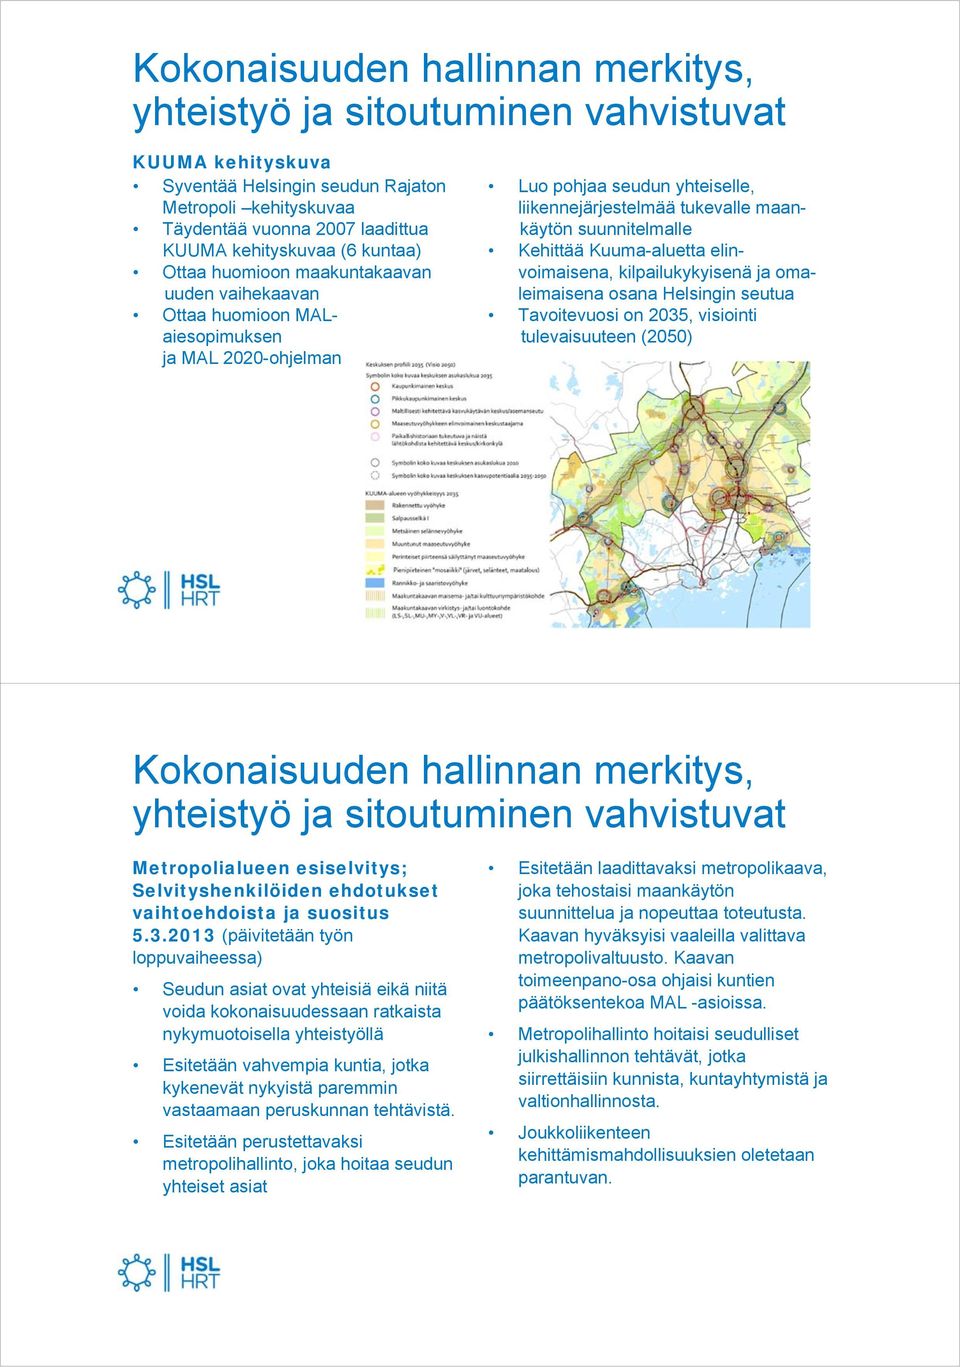 Kehittää Kuuma-aluetta elinvoimaisena, kilpailukykyisenä ja omaleimaisena osana Helsingin seutua Tavoitevuosi on 2035, visiointi tulevaisuuteen (2050) Kokonaisuuden hallinnan merkitys, yhteistyö ja